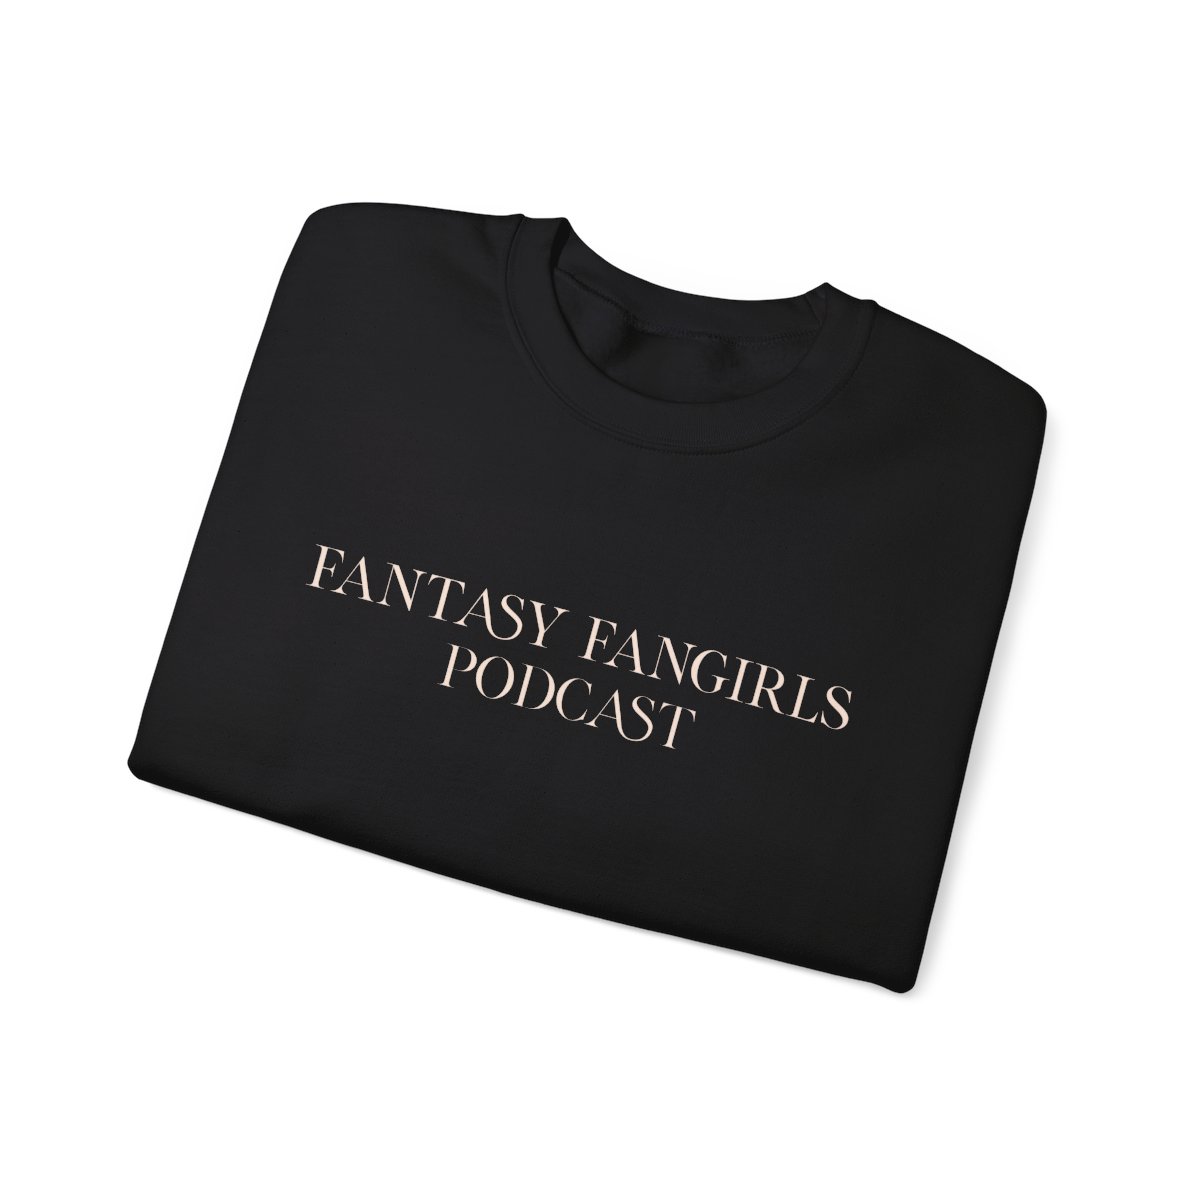 Fantasy Fangirls Unisex Crewneck Sweatshirt, Text Only product thumbnail image